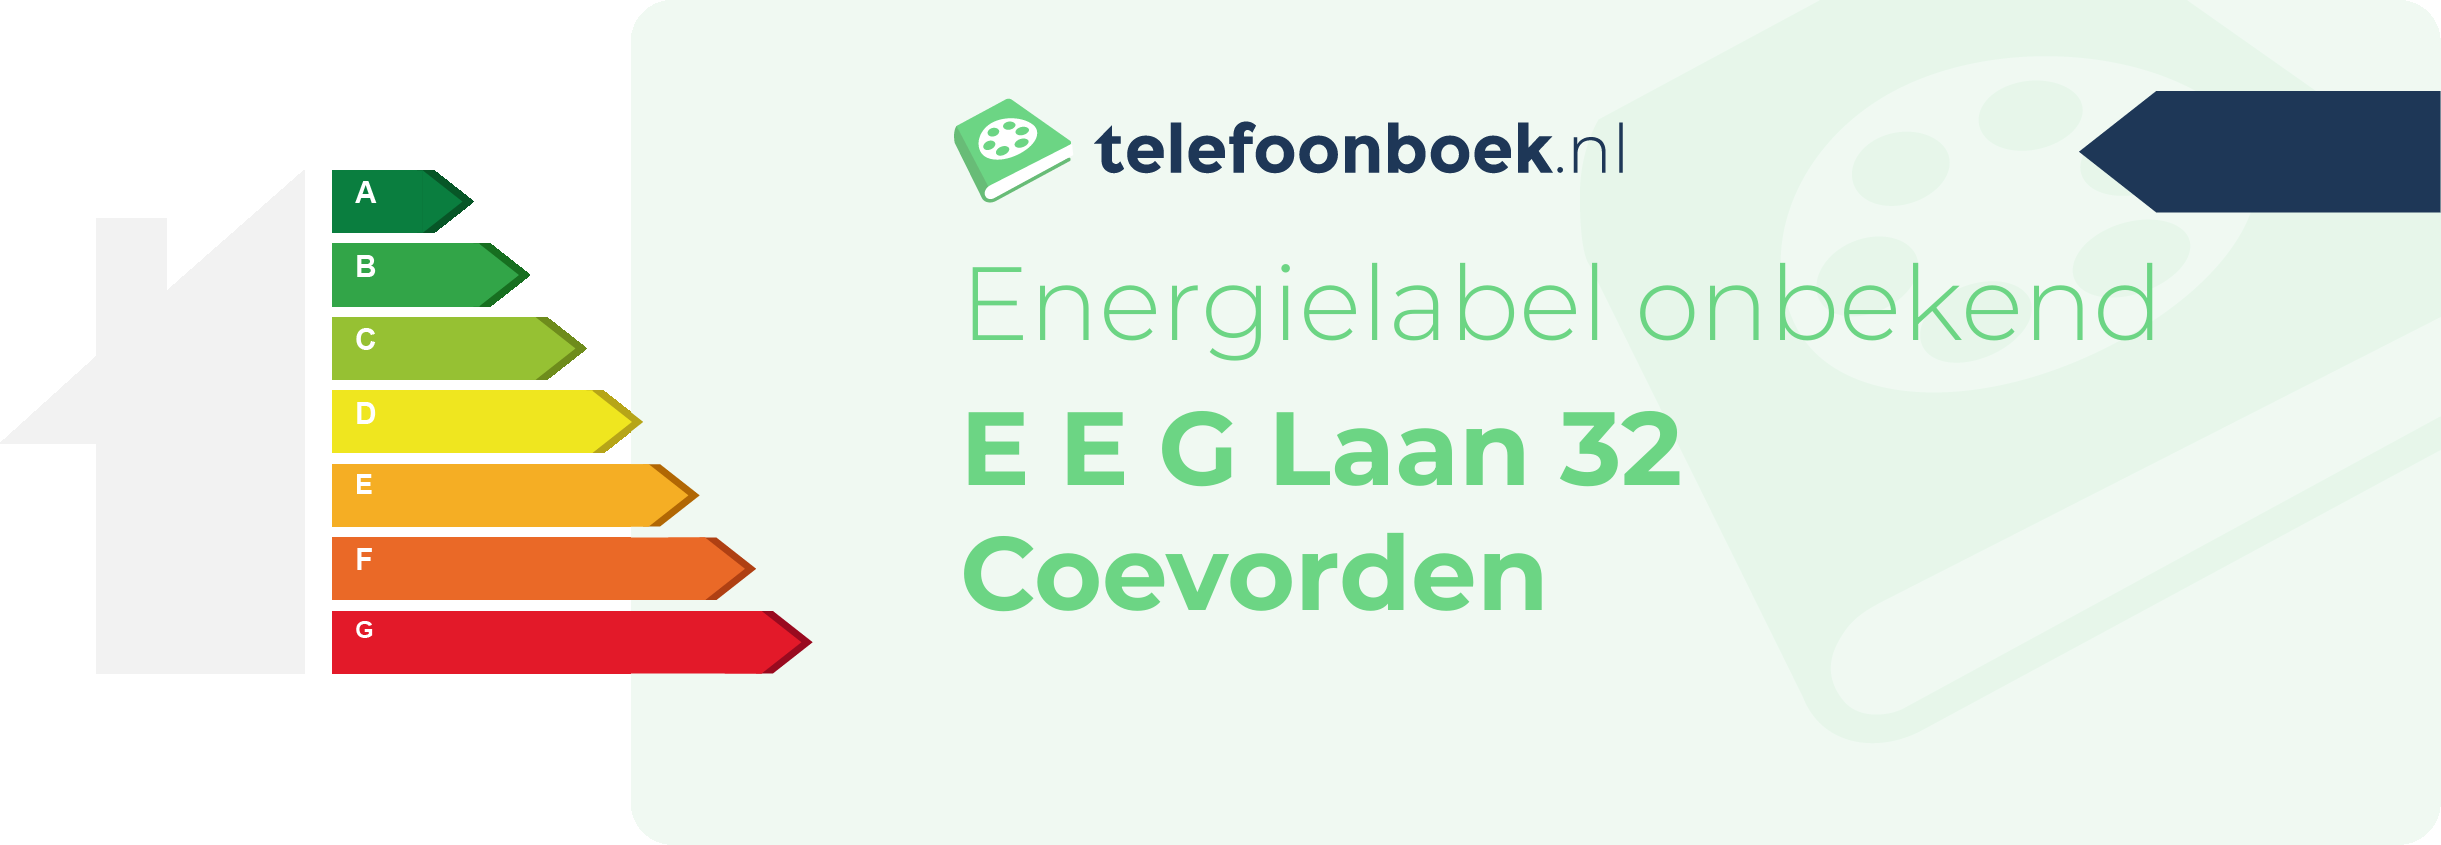 Energielabel E E G Laan 32 Coevorden